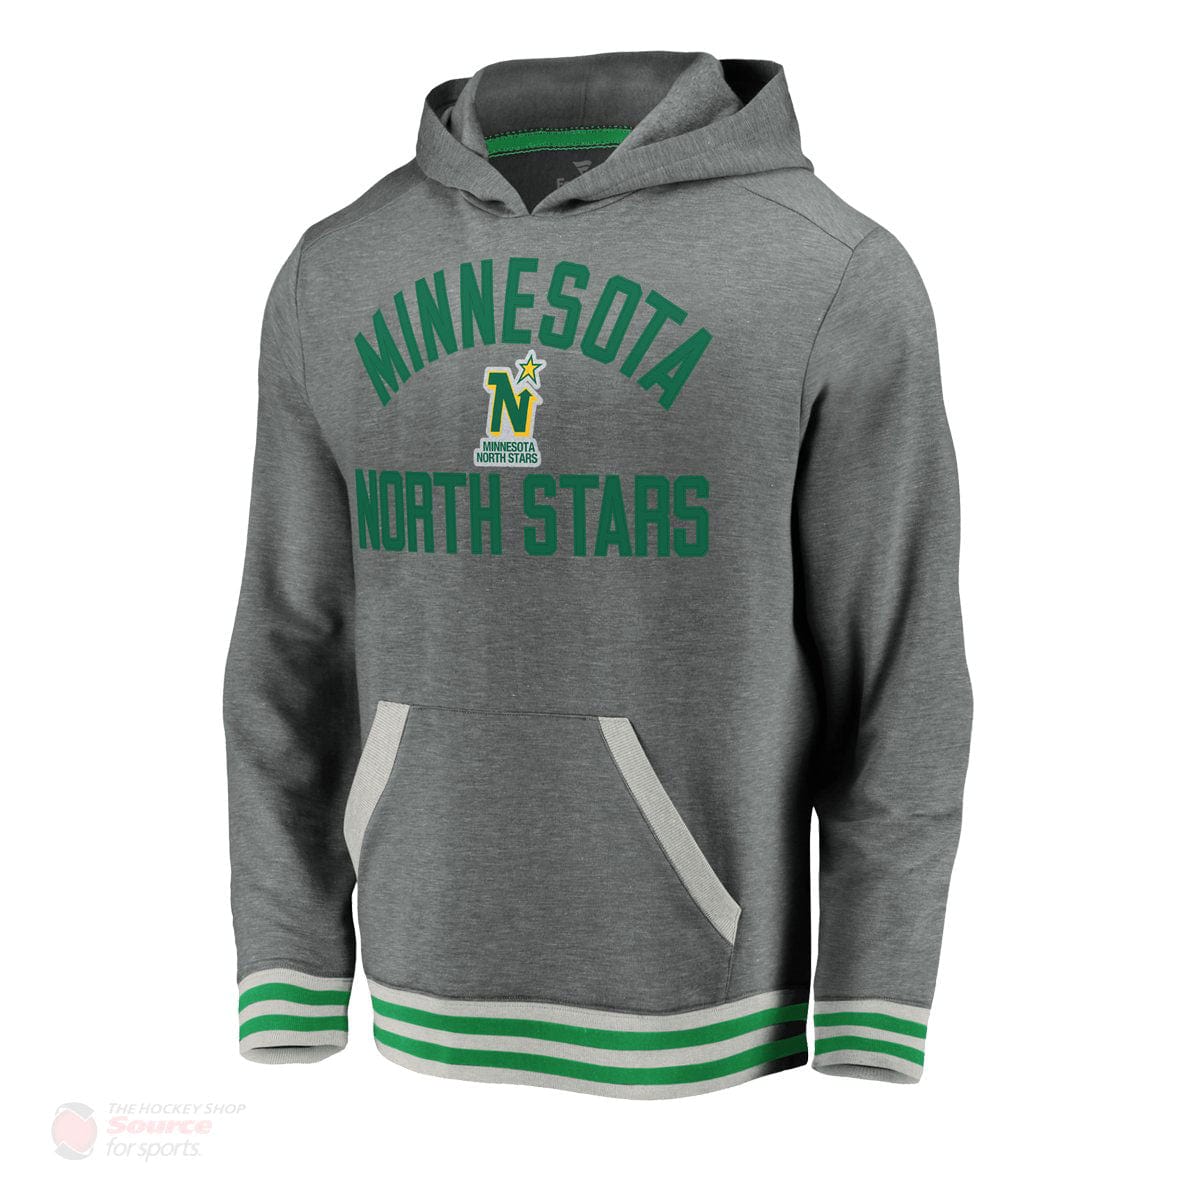 Minnesota North Stars Fanatics Upperclassmen Vintage Pullover Mens Hoody